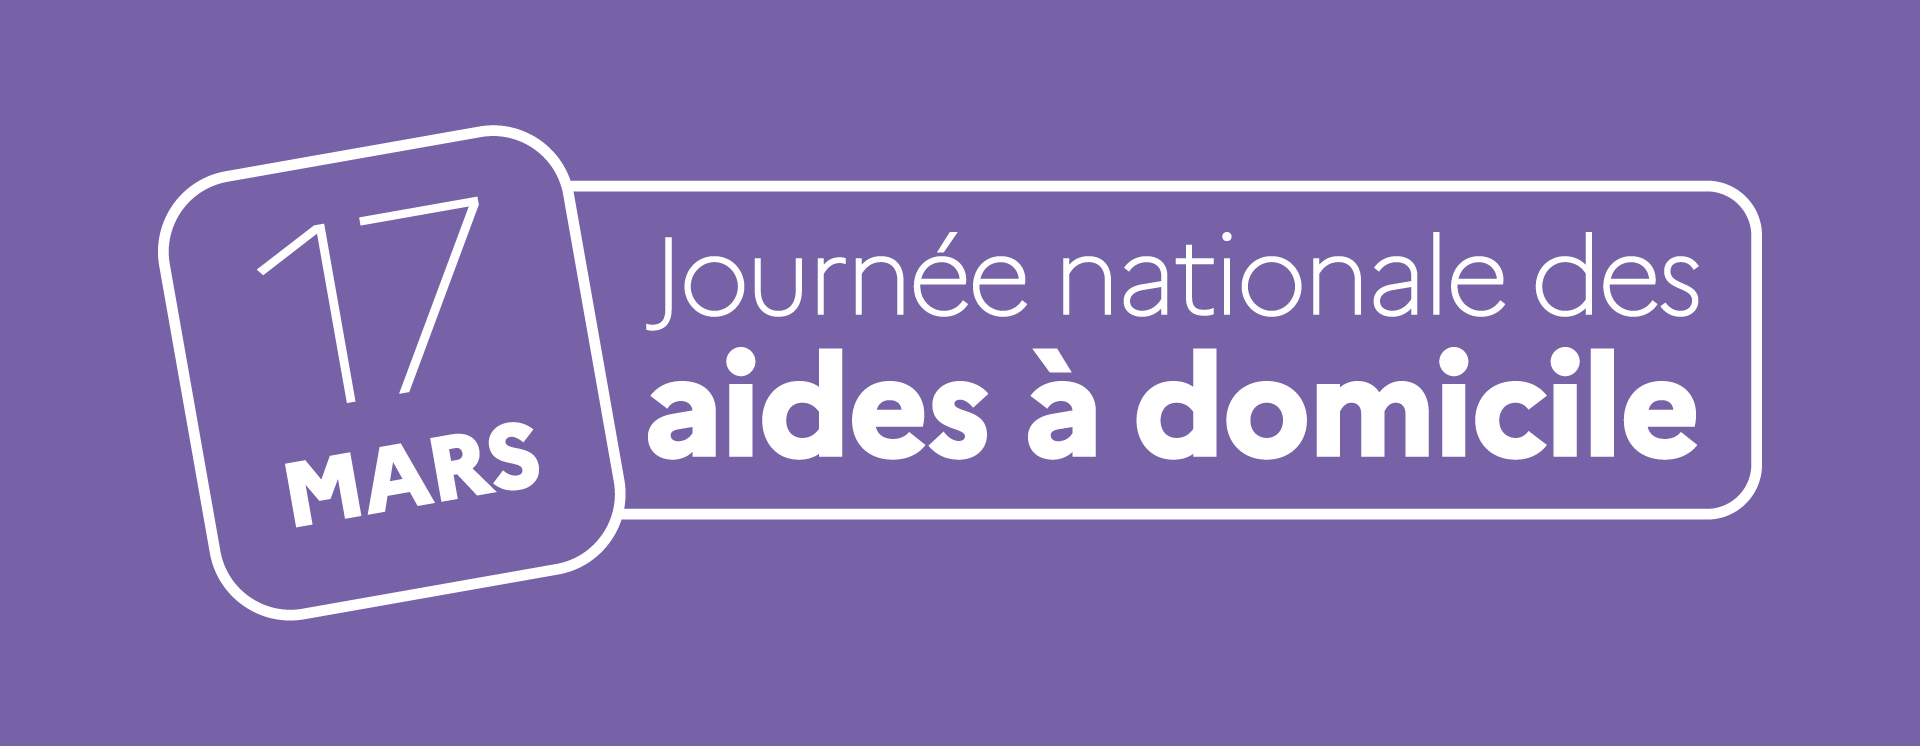 Logo 17 mars - Journée nationale des aides à domicile